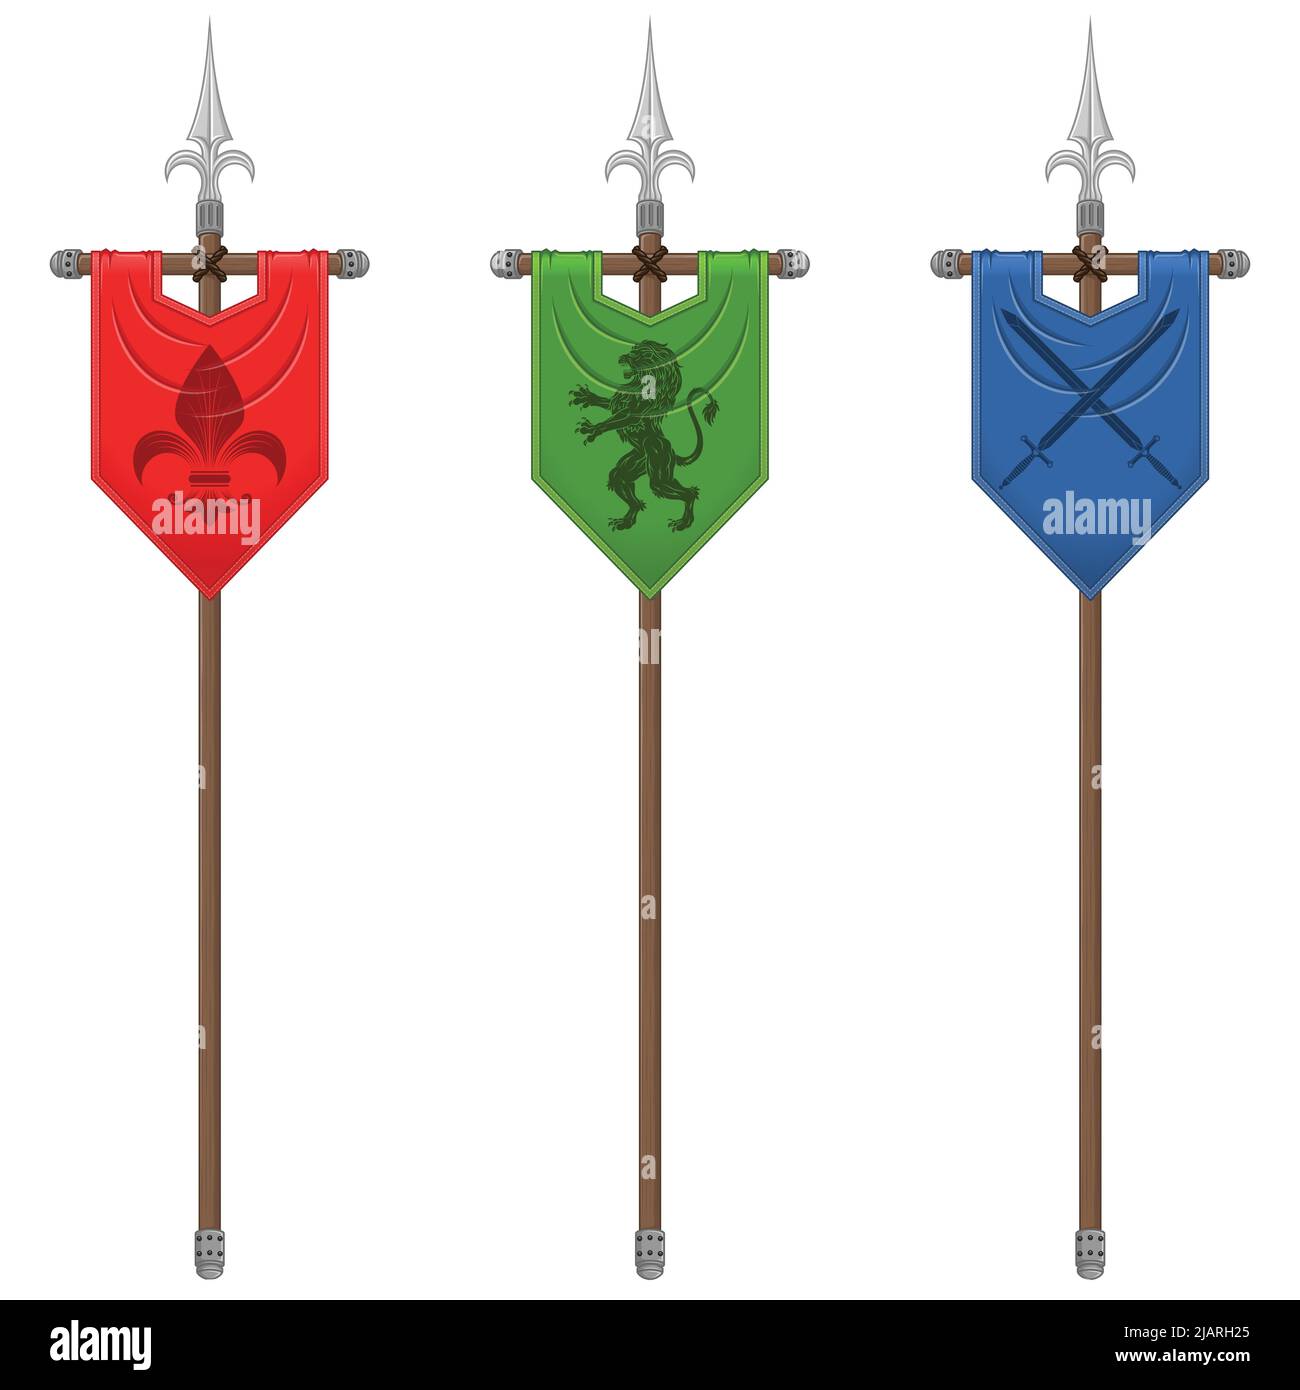 Design a bandiera verticale in stile medievale con simbolo araldico, bandiera di nobili famiglie del Medioevo su una lancia. Illustrazione Vettoriale